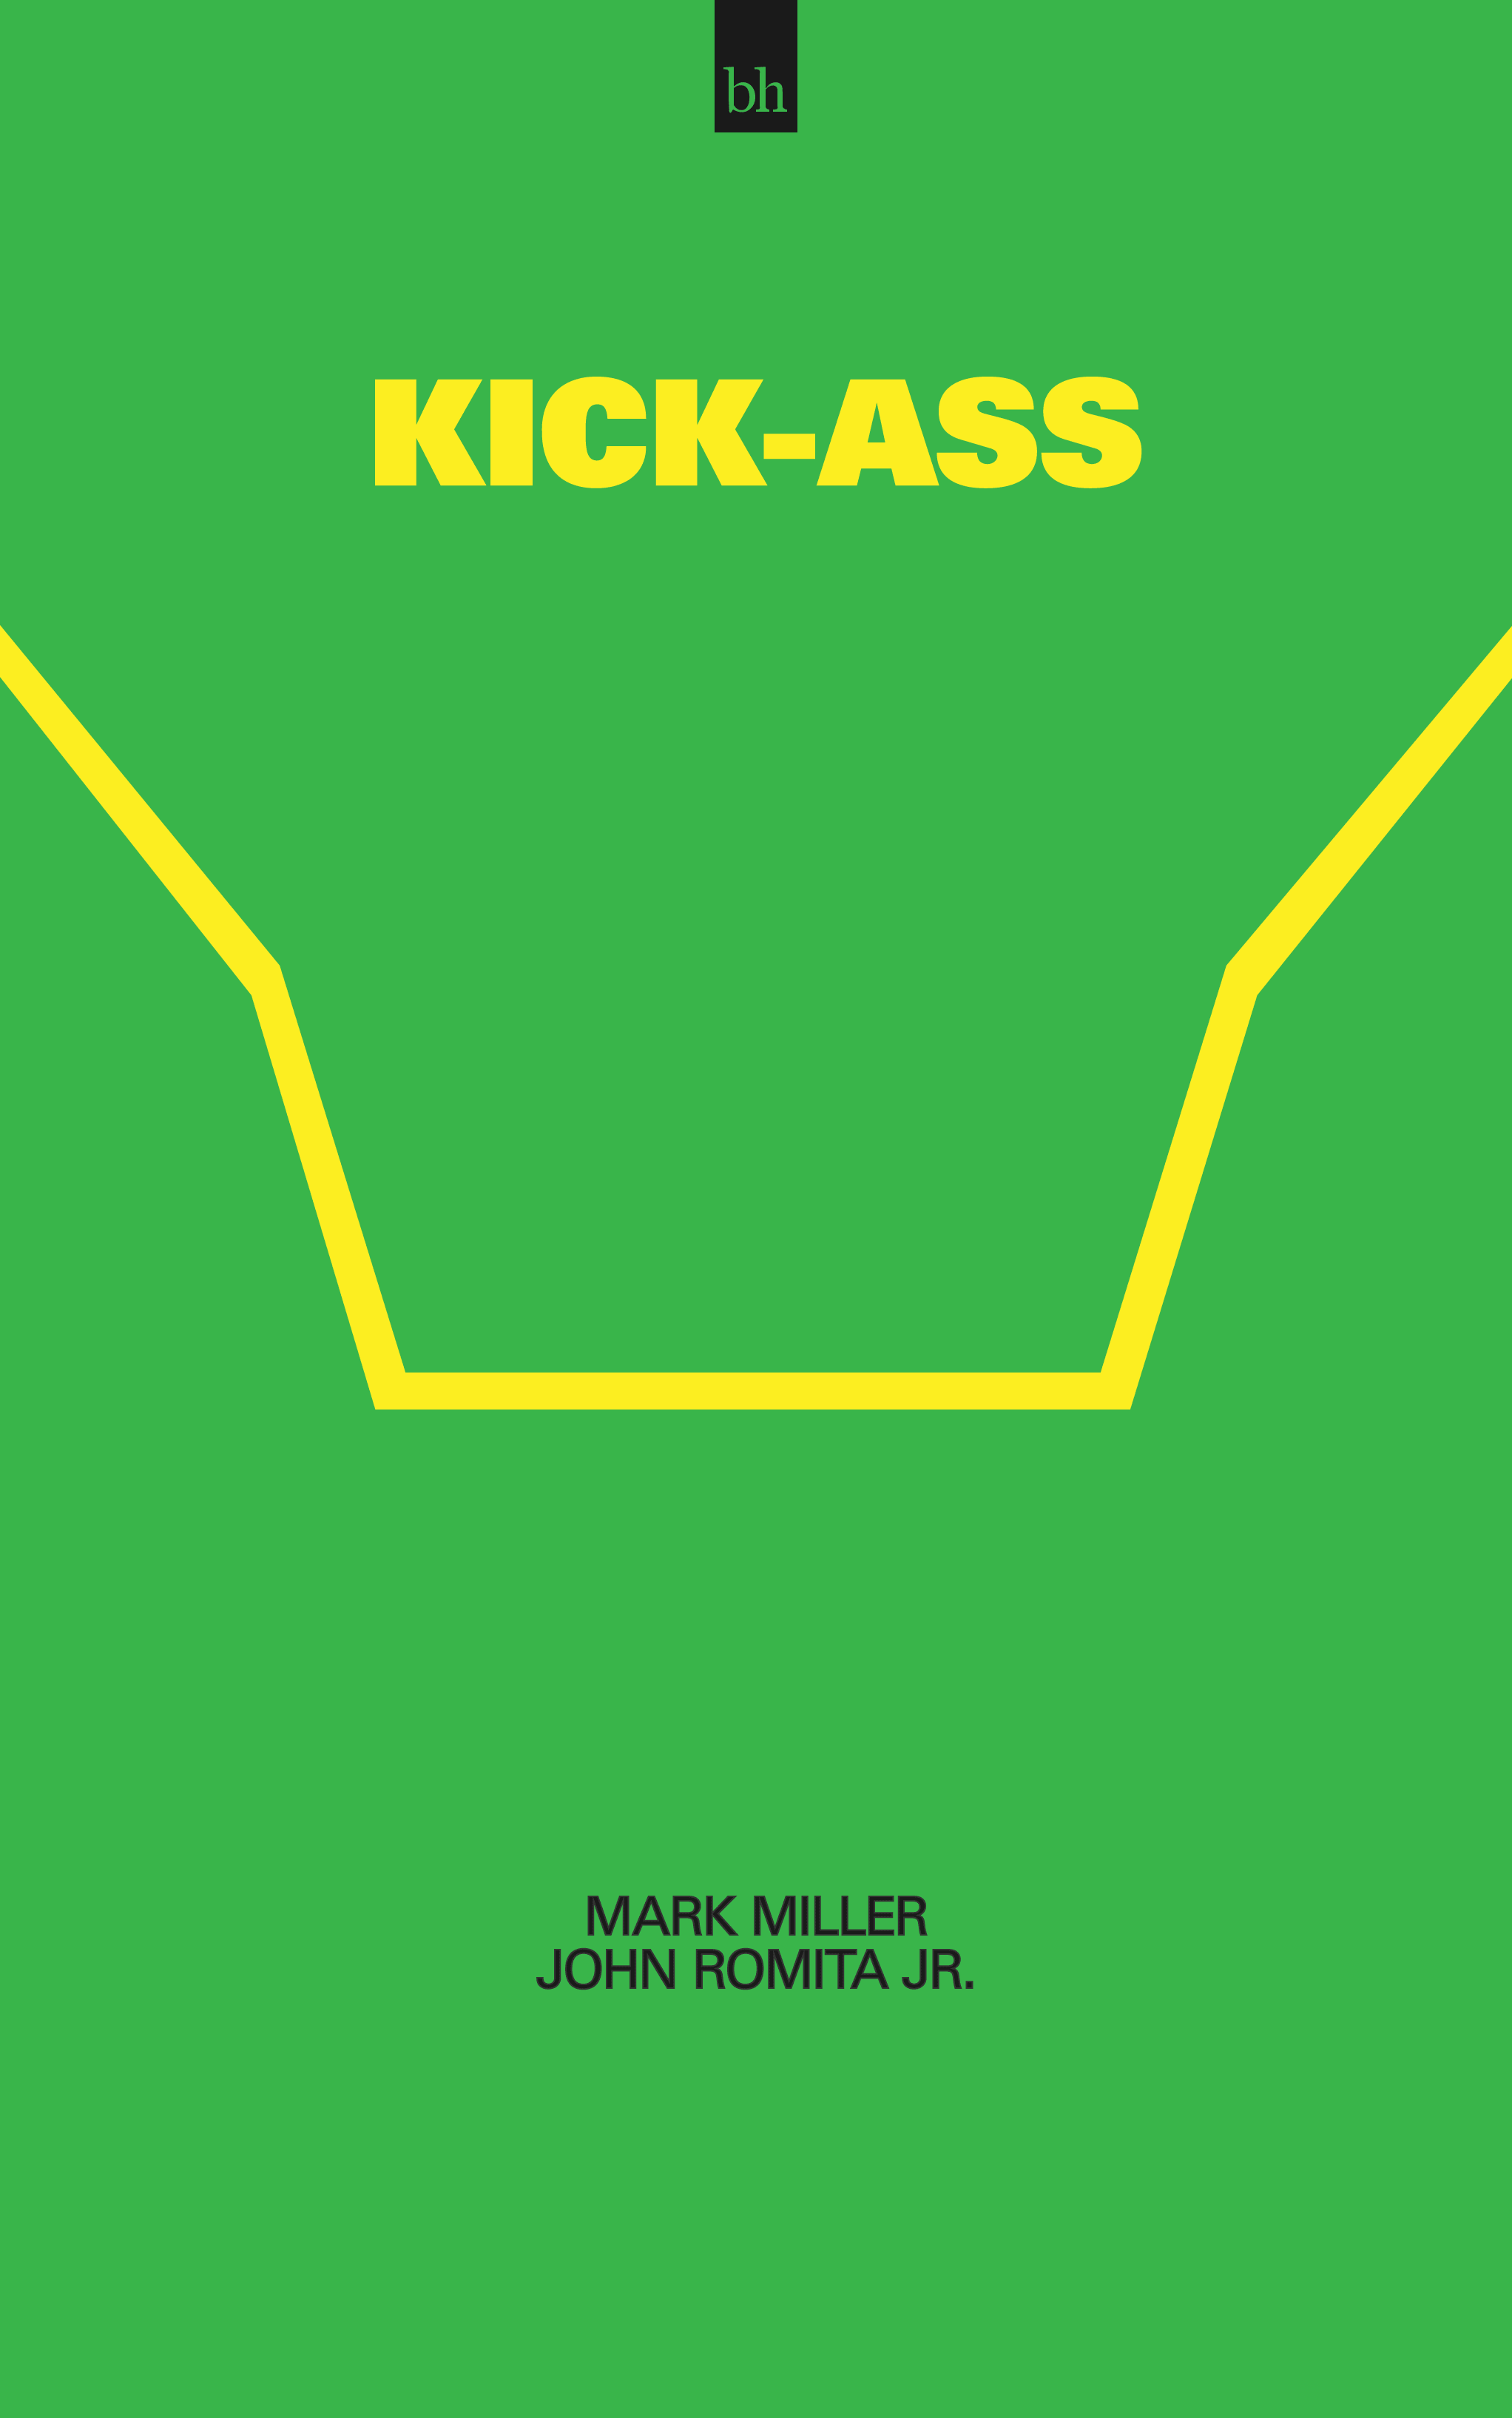 Kick-Ass by Mark Millar